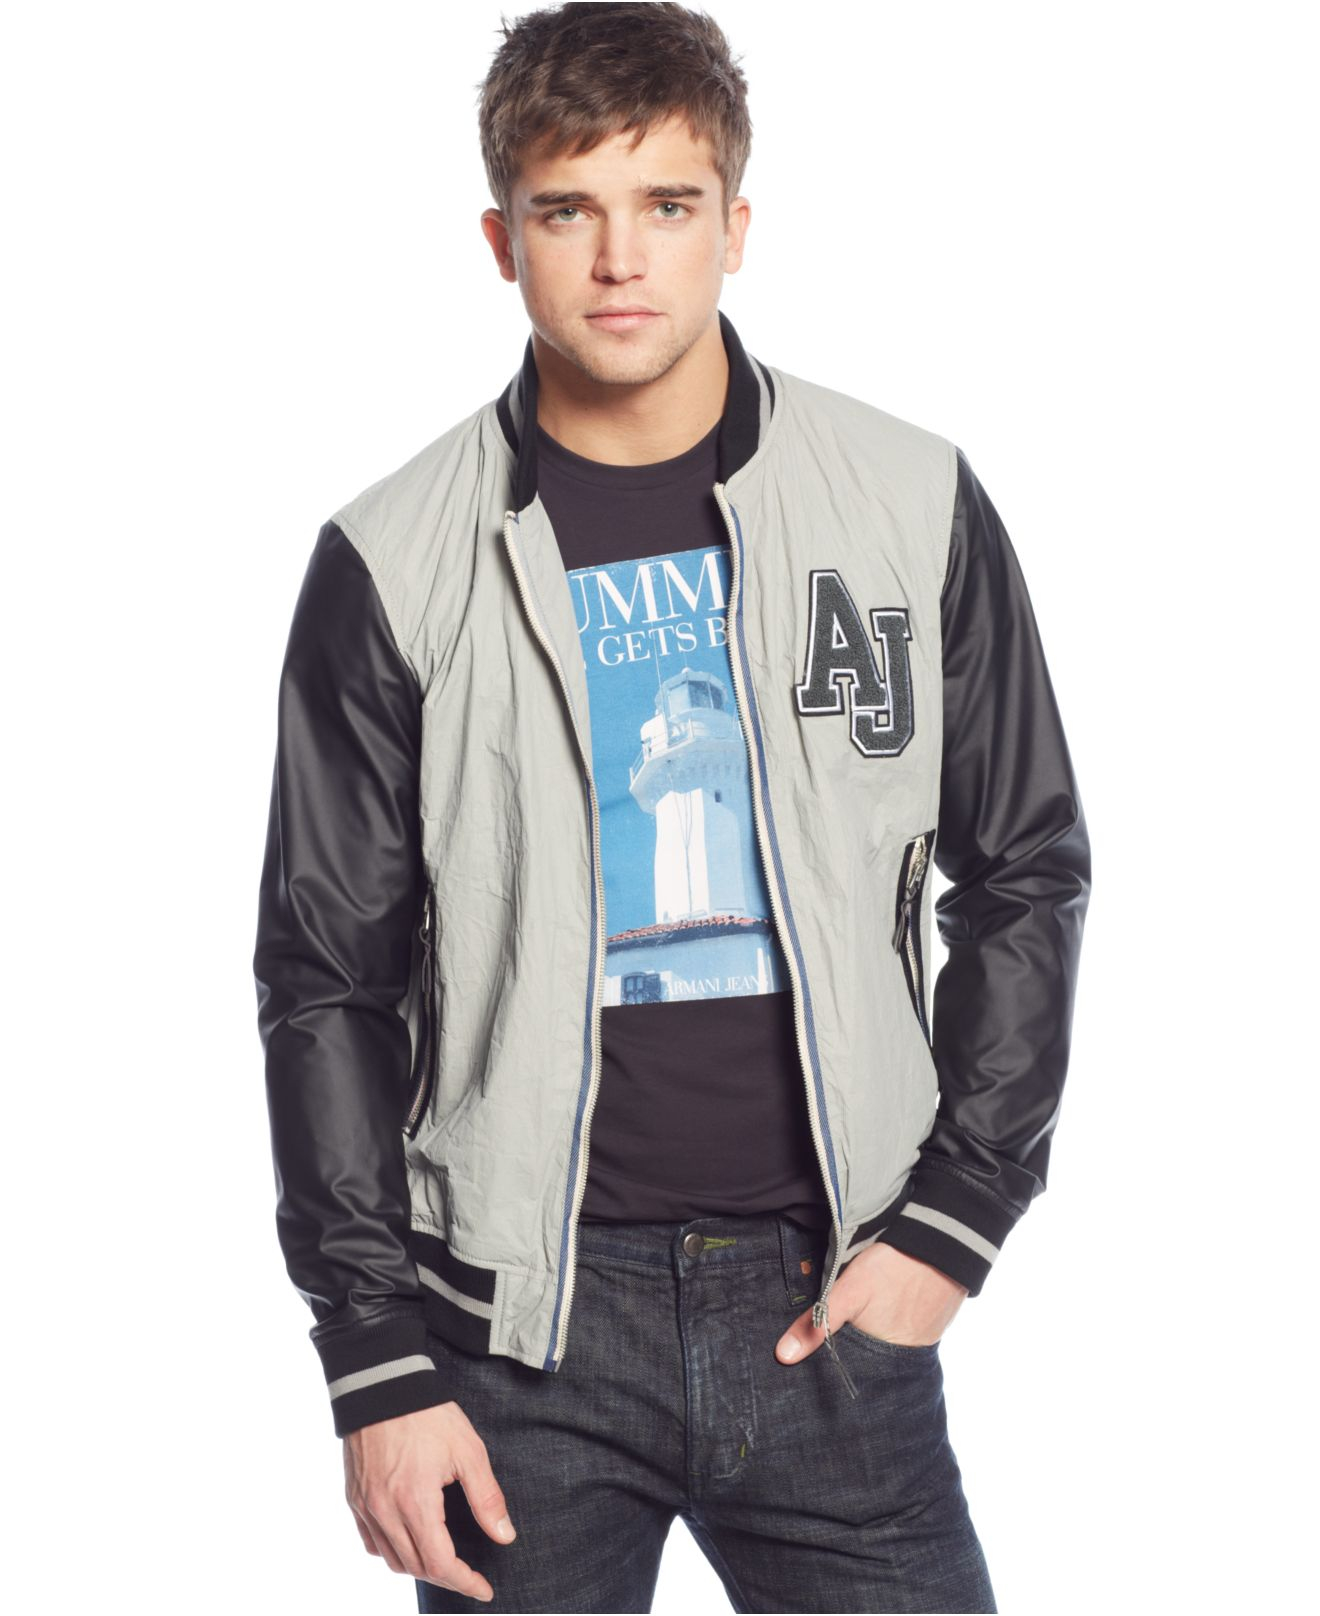 Lyst - Armani Jeans Aj Mixed-media Varsity Jacket in Gray for Men